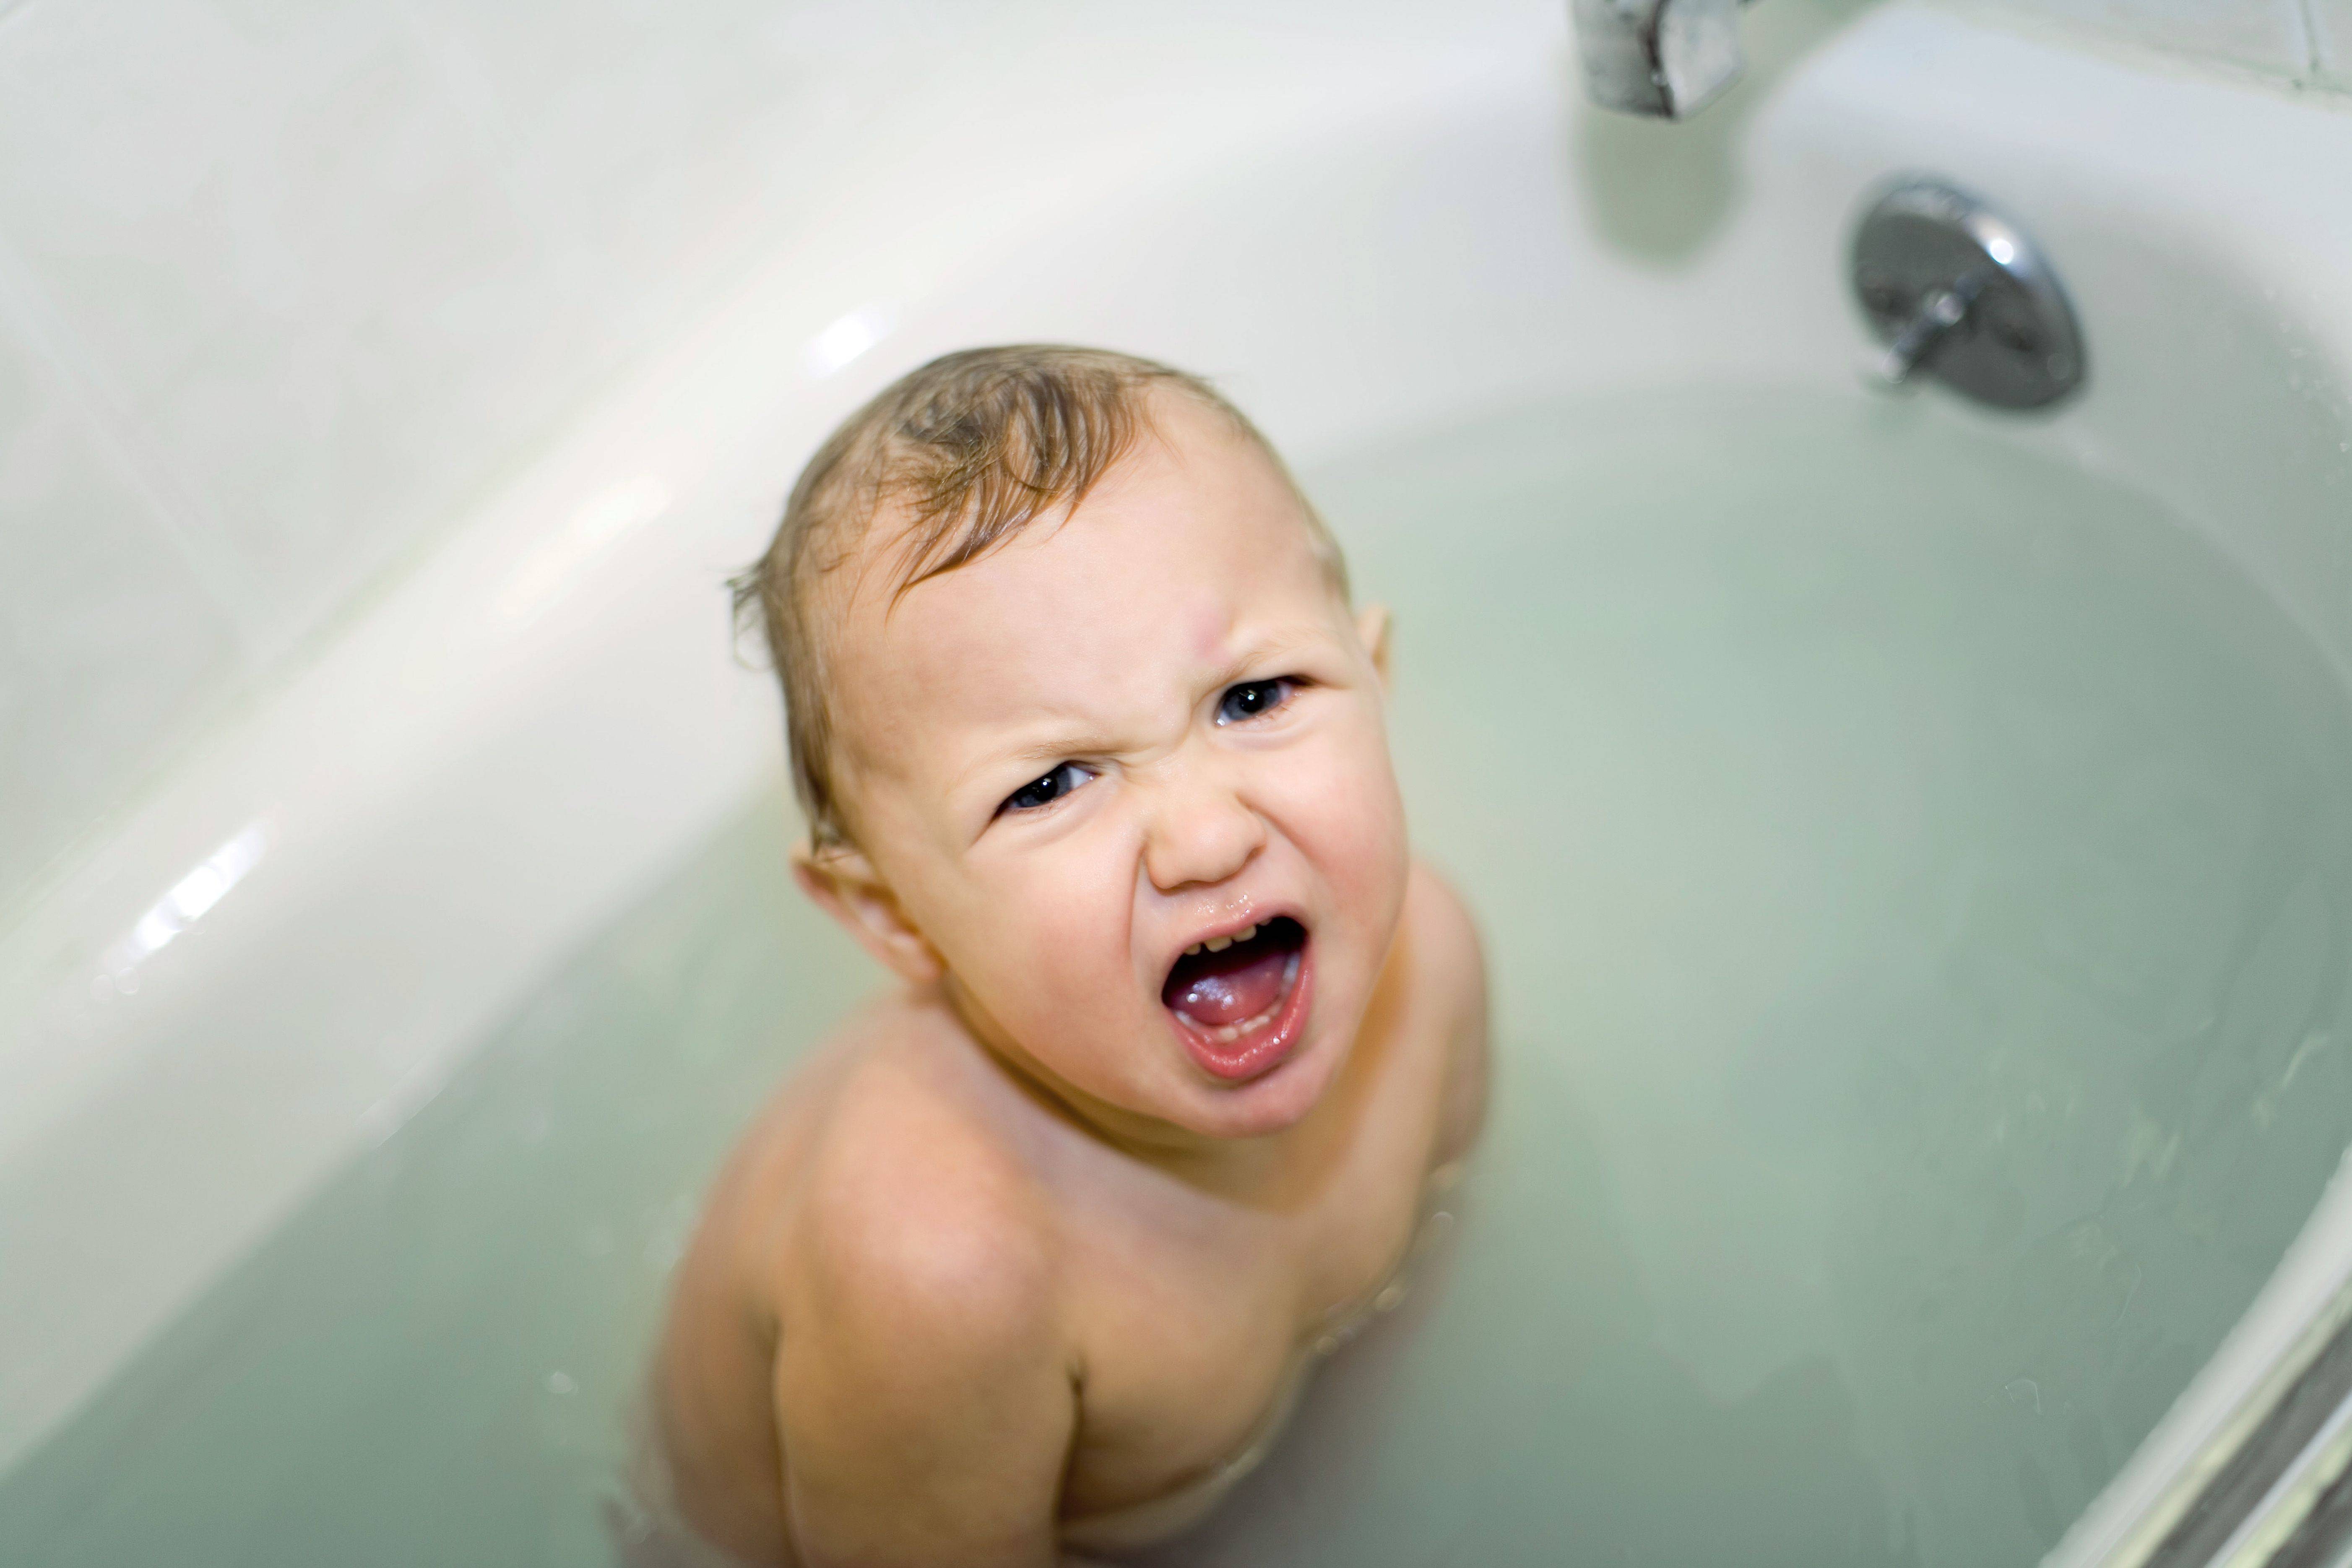 Ребенок боится купаться в ванной - что делать и почему так происходит?